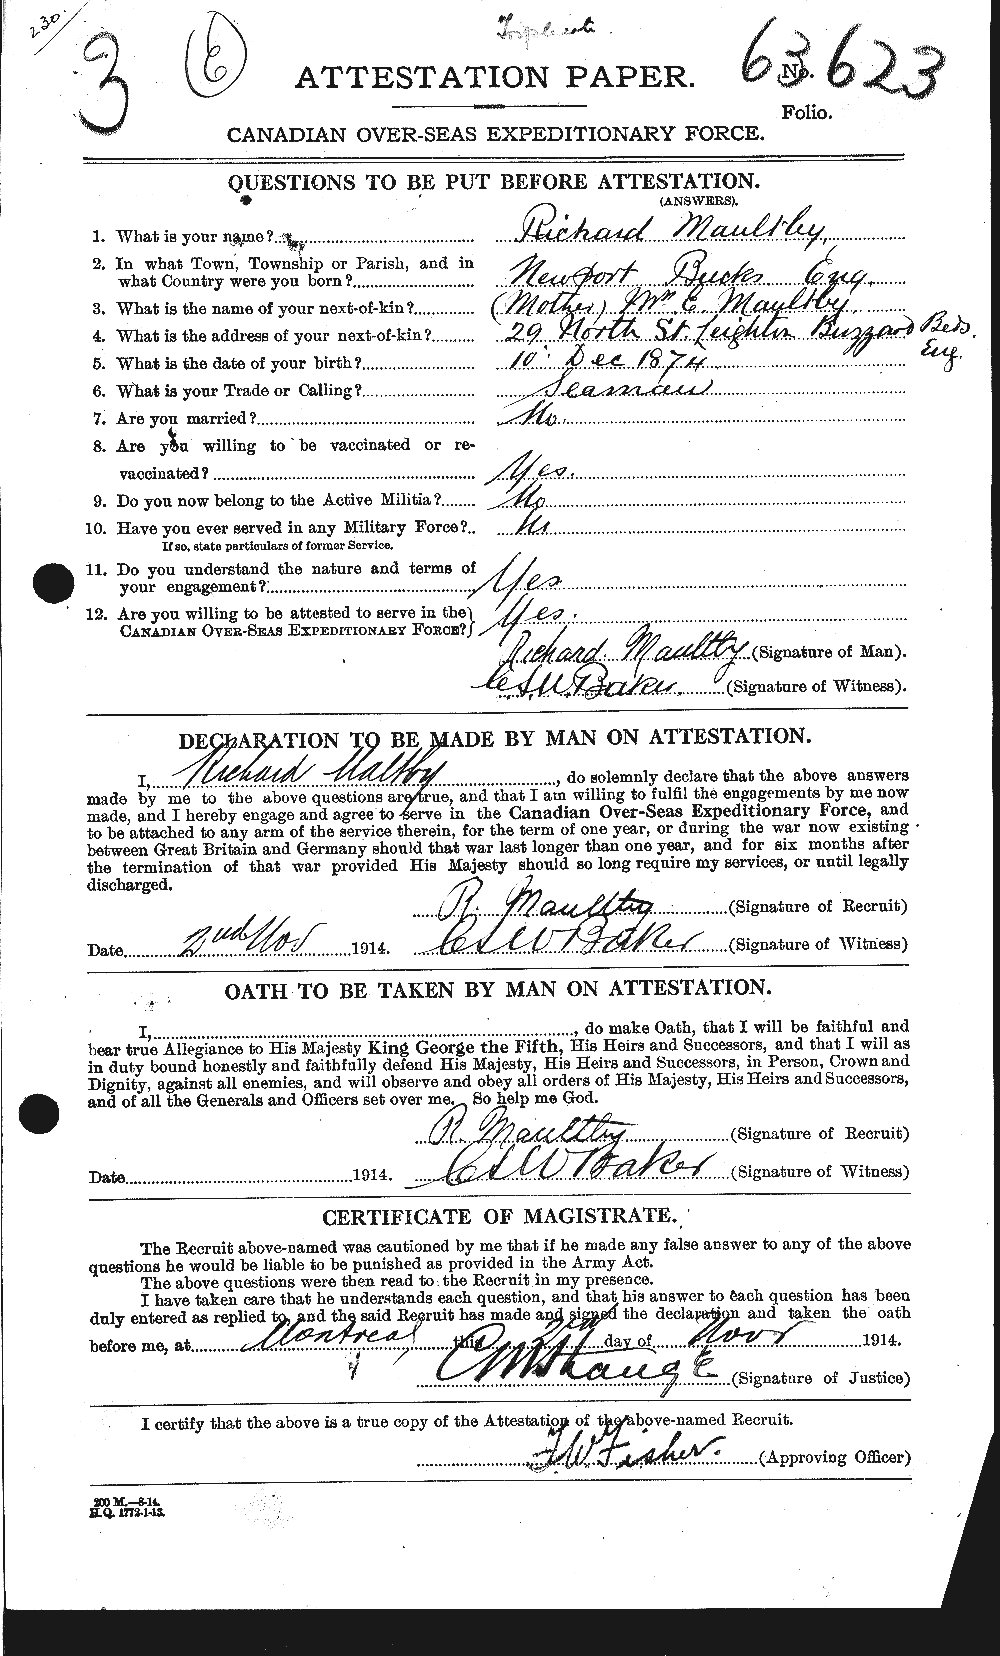 Dossiers du Personnel de la Première Guerre mondiale - CEC 487787a